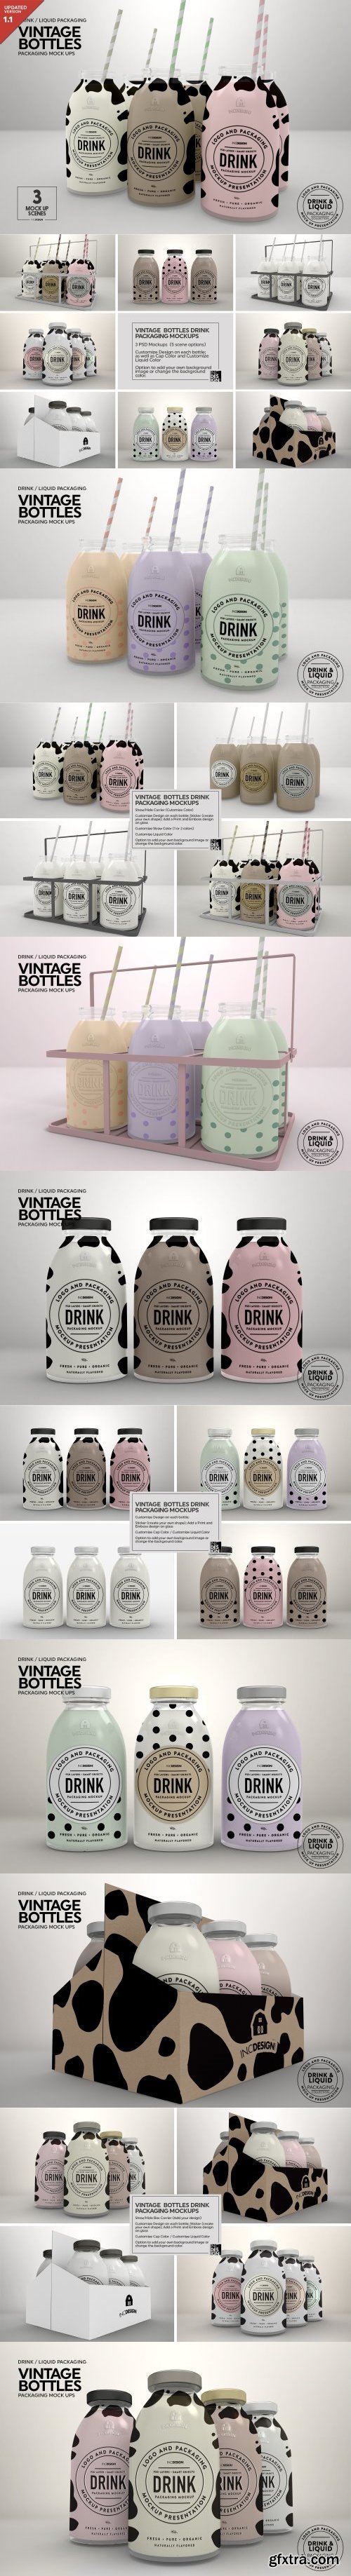 CM - Vintage Bottles Packaging Mockups 908479